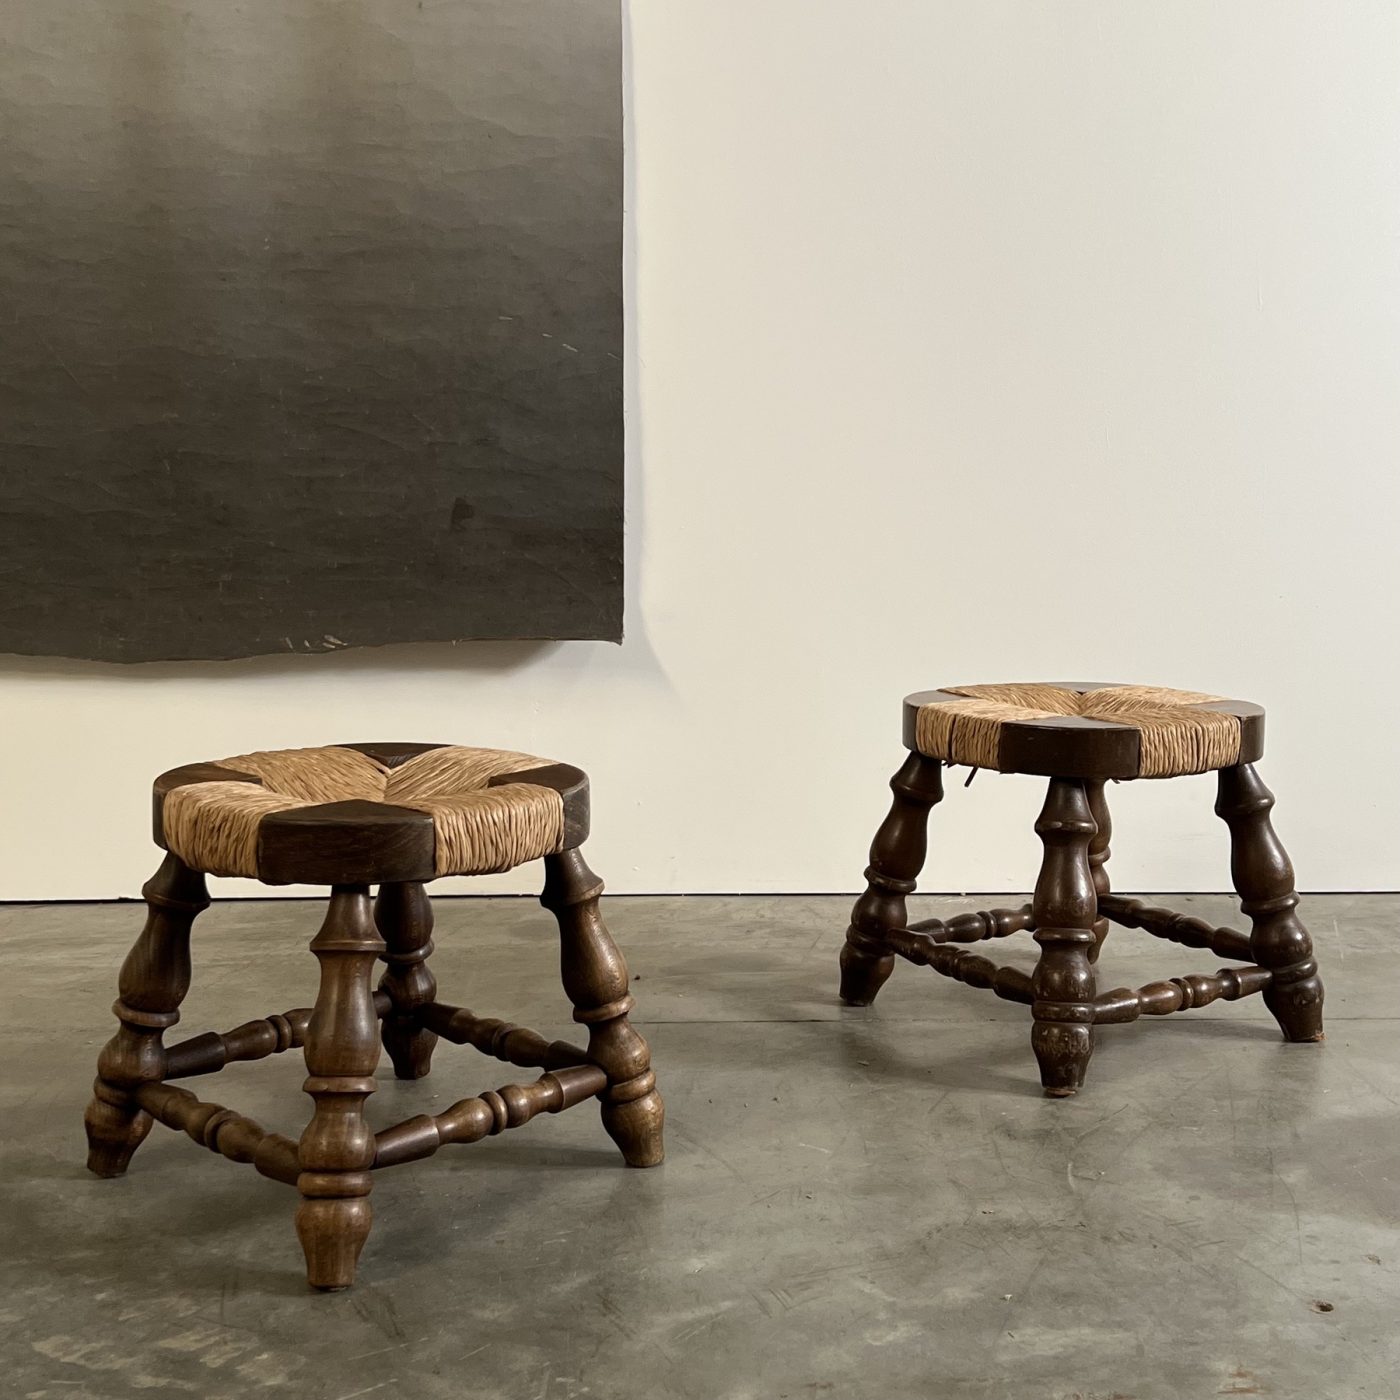 objet-vagabond-brutalist-stools0005